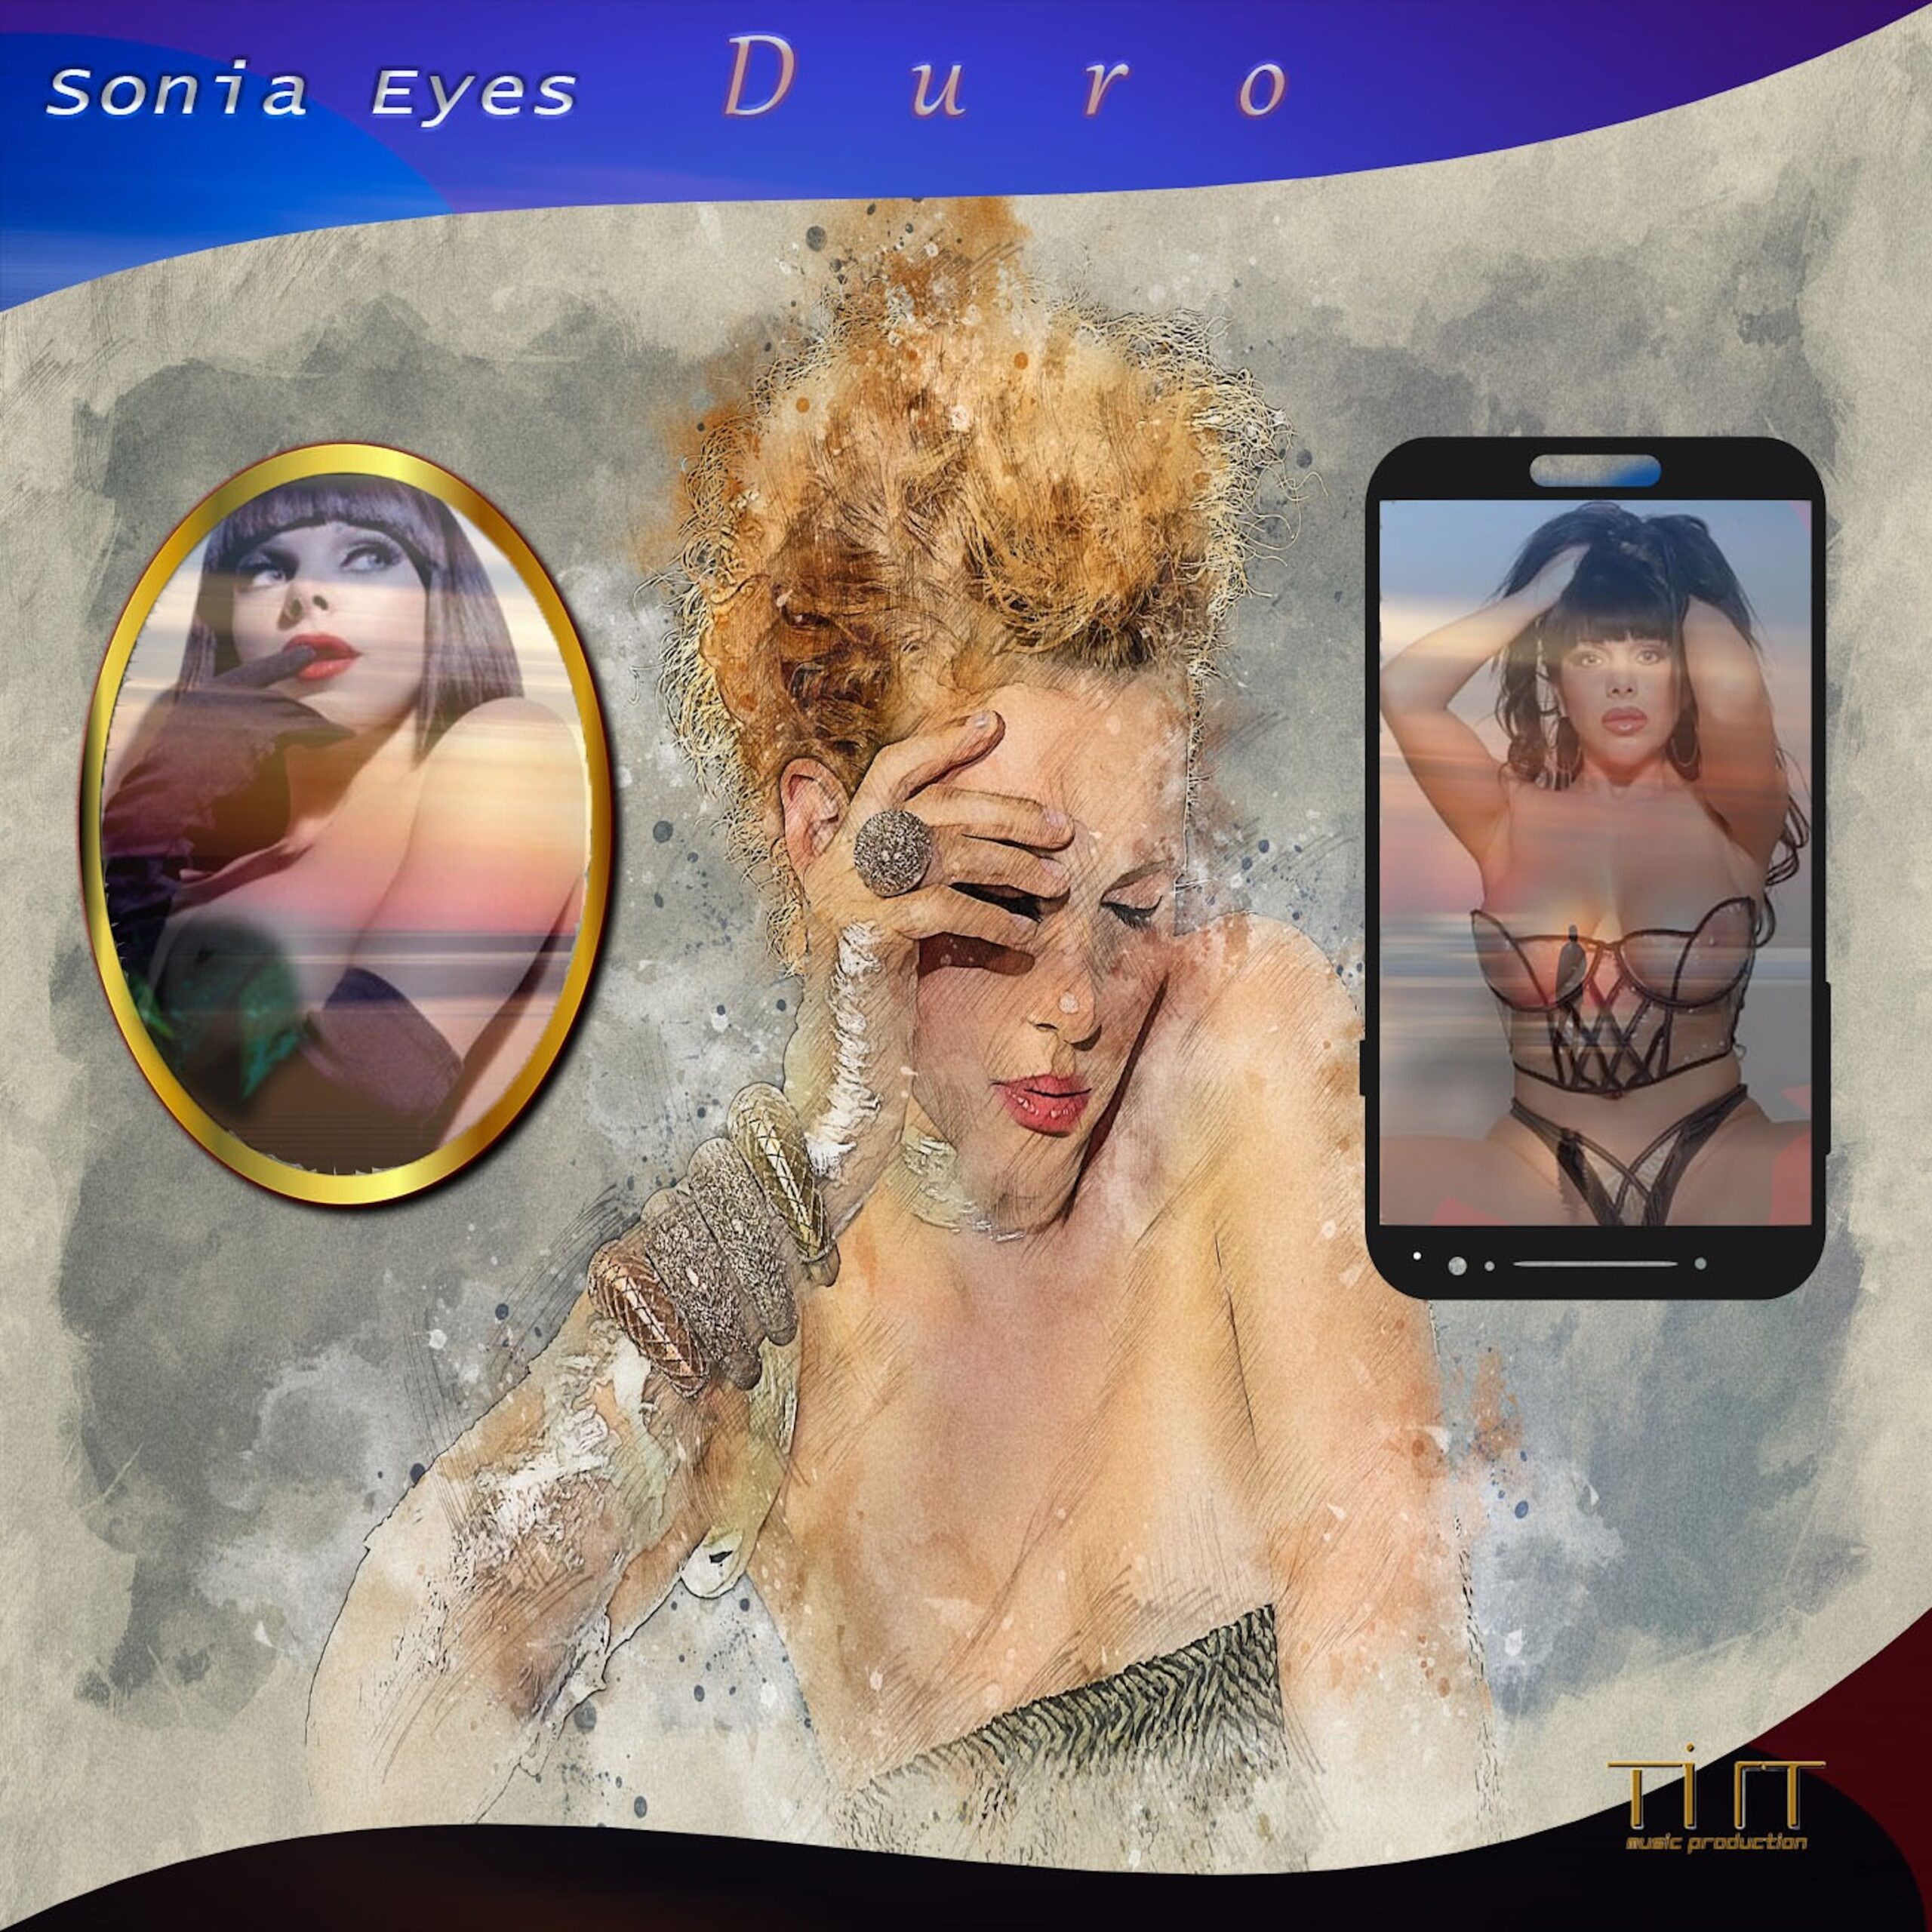 Nuovo singolo per l’icona del porno Sonia Eyes